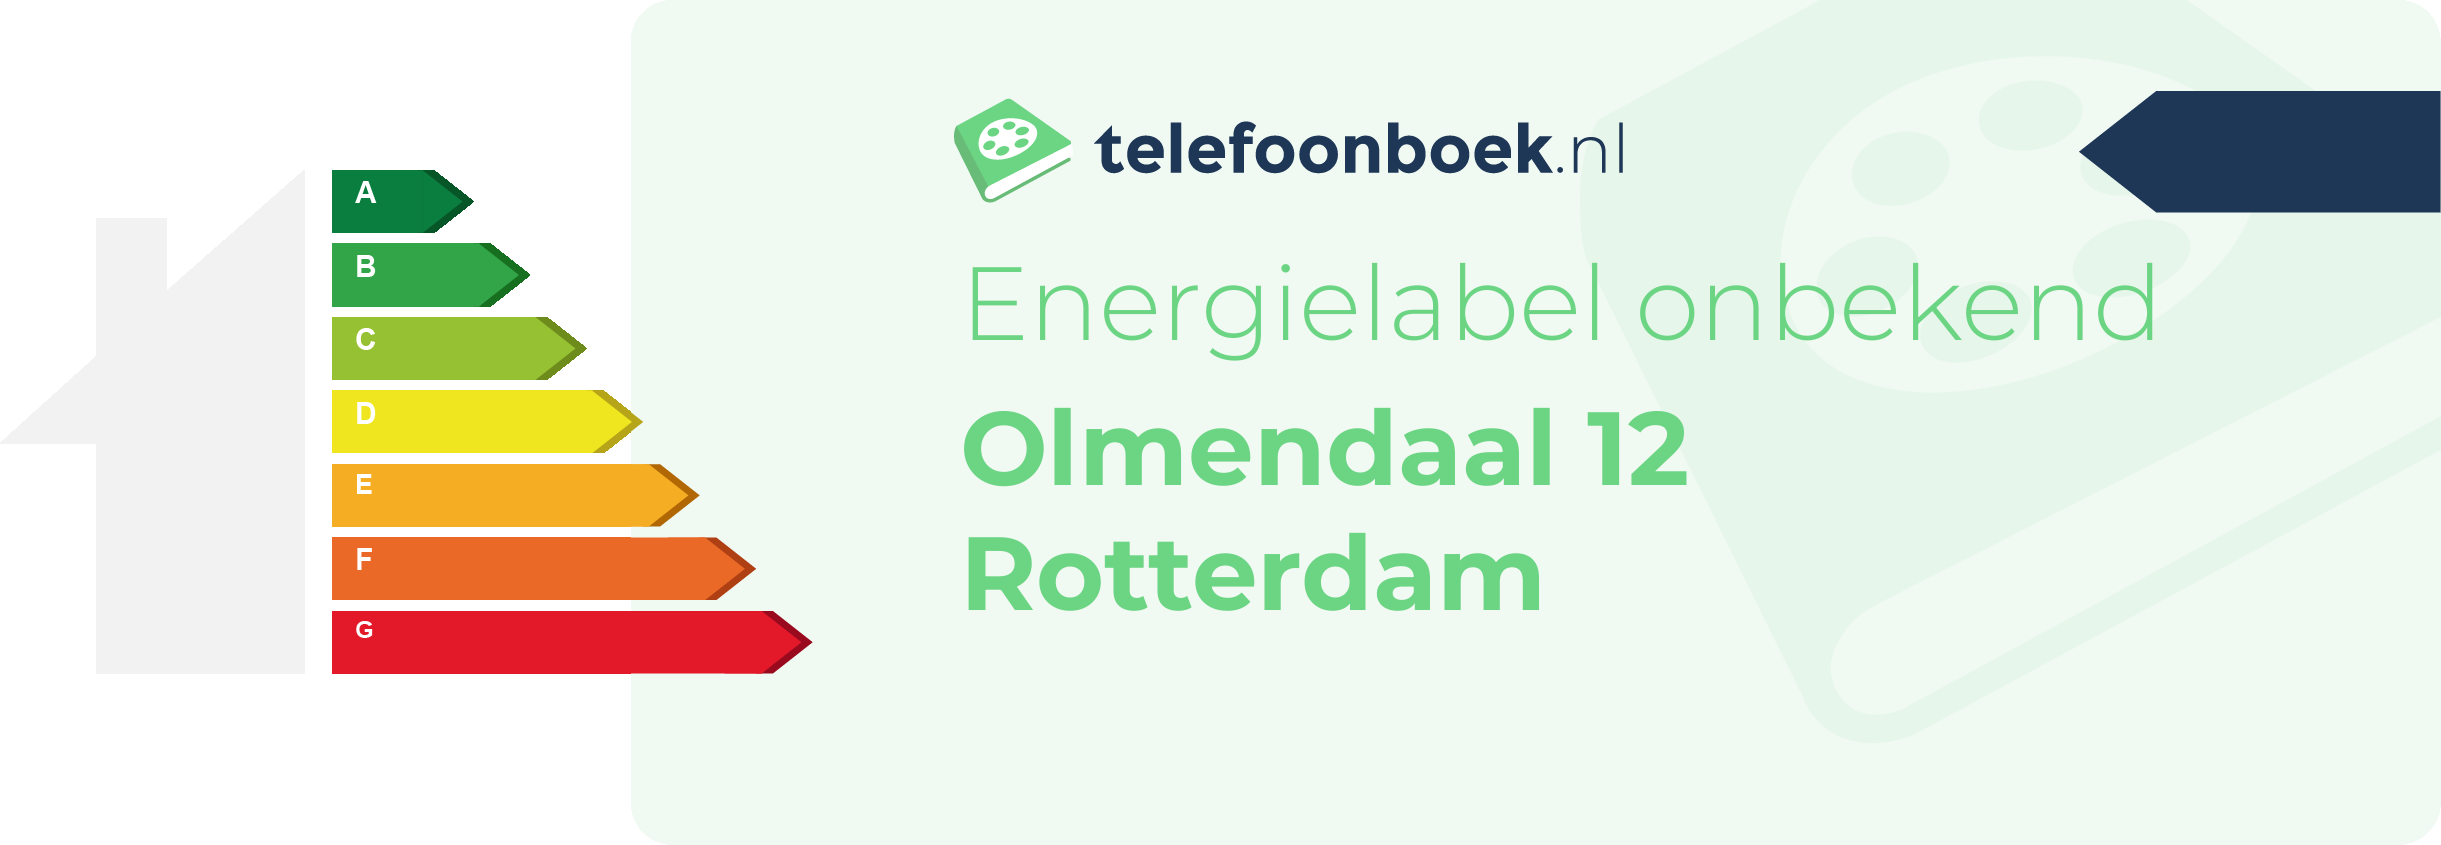 Energielabel Olmendaal 12 Rotterdam